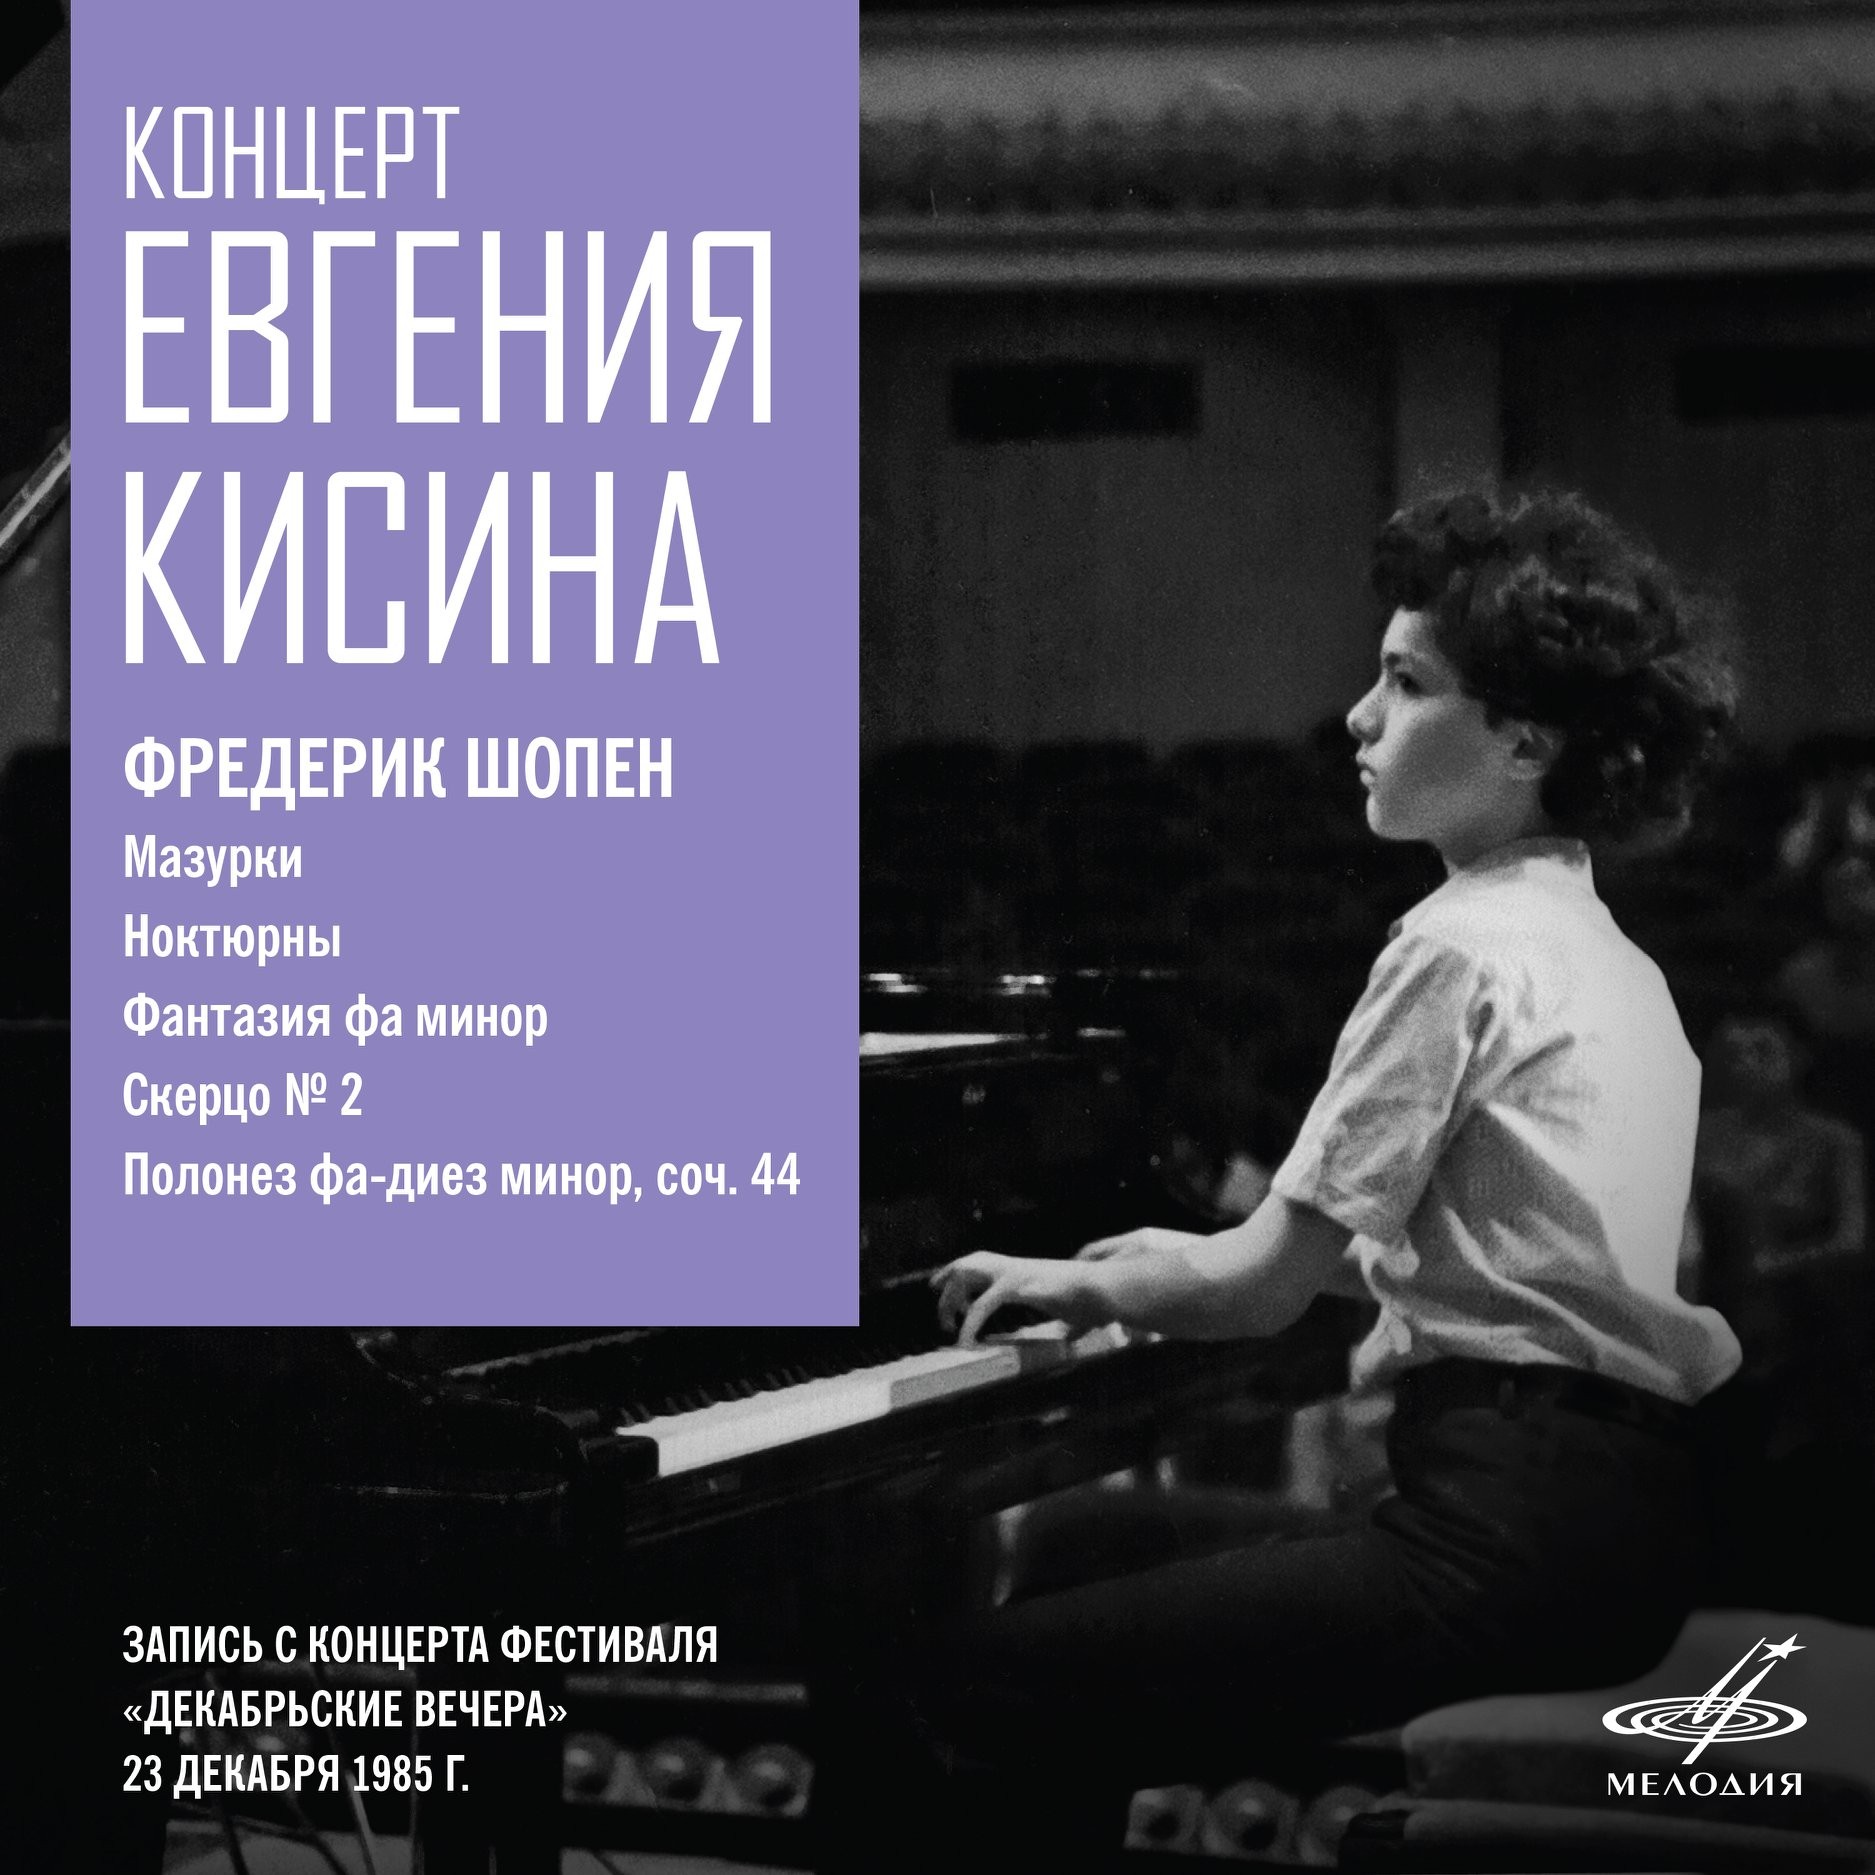 Концерт Евгения Кисина. Москва, 23 декабря 1985 г.